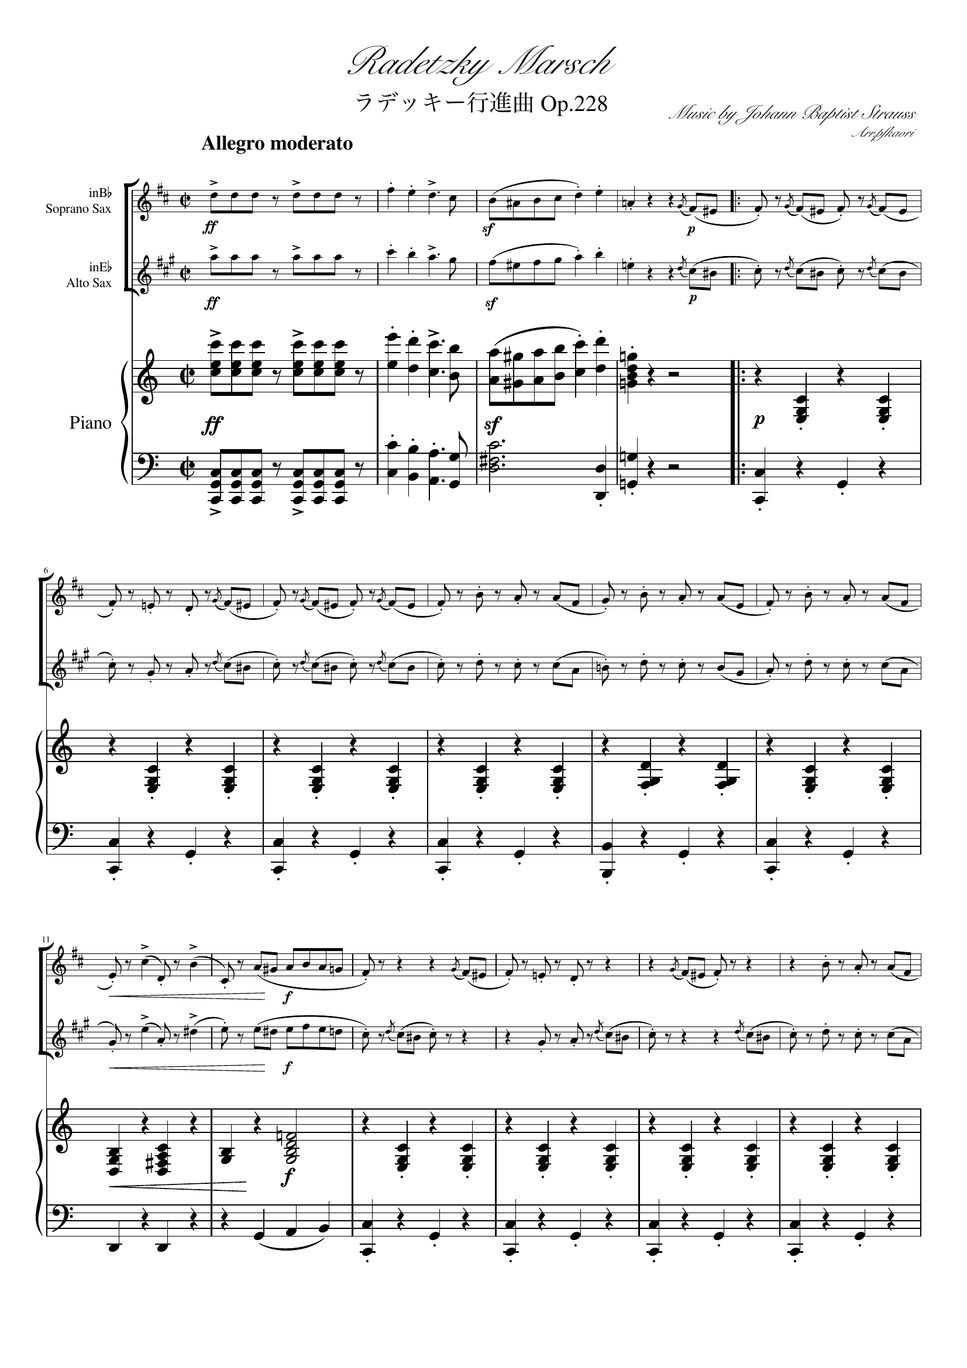 ヨハンシュトラウス1世 - ラデッキー行進曲 (C・ピアノトリオ/ソプラノサックス&アルトサックス) by pfkaori